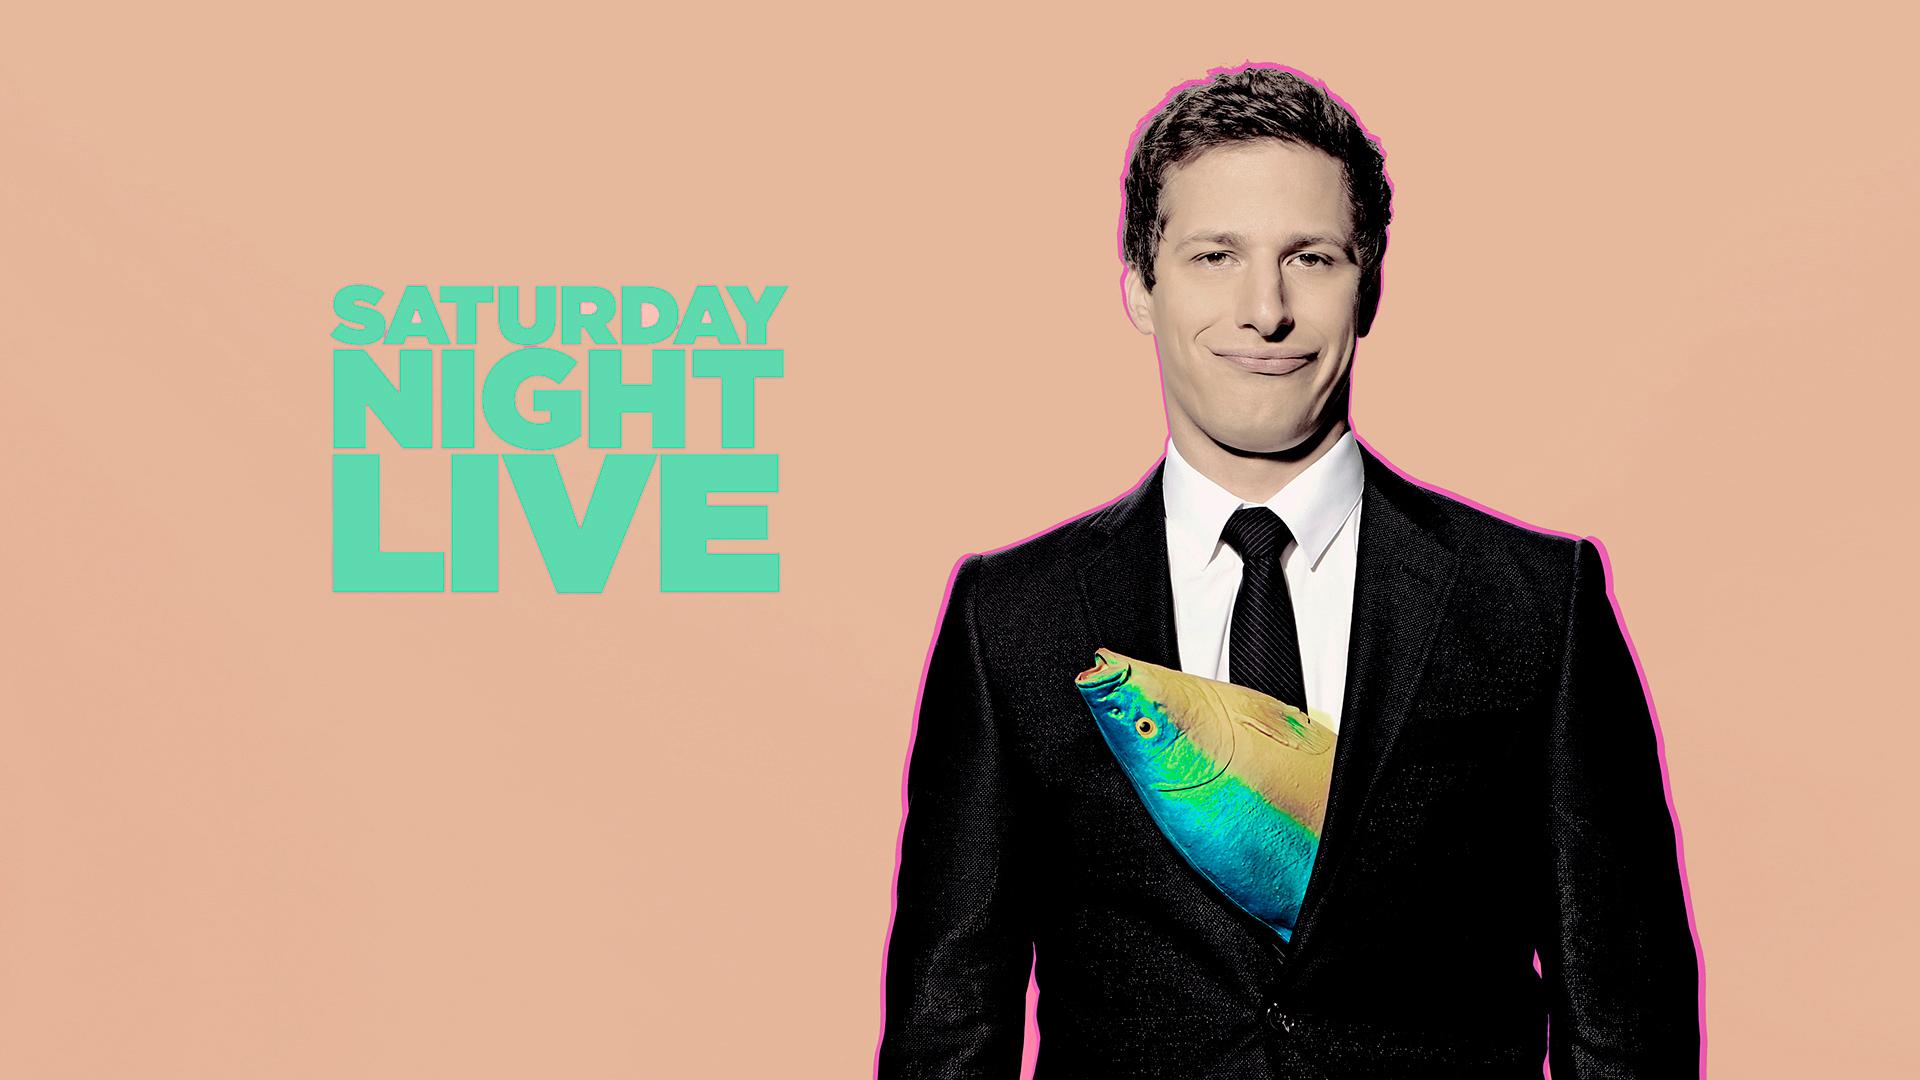 Saturday Night Live Wallpaper 9 X 1080